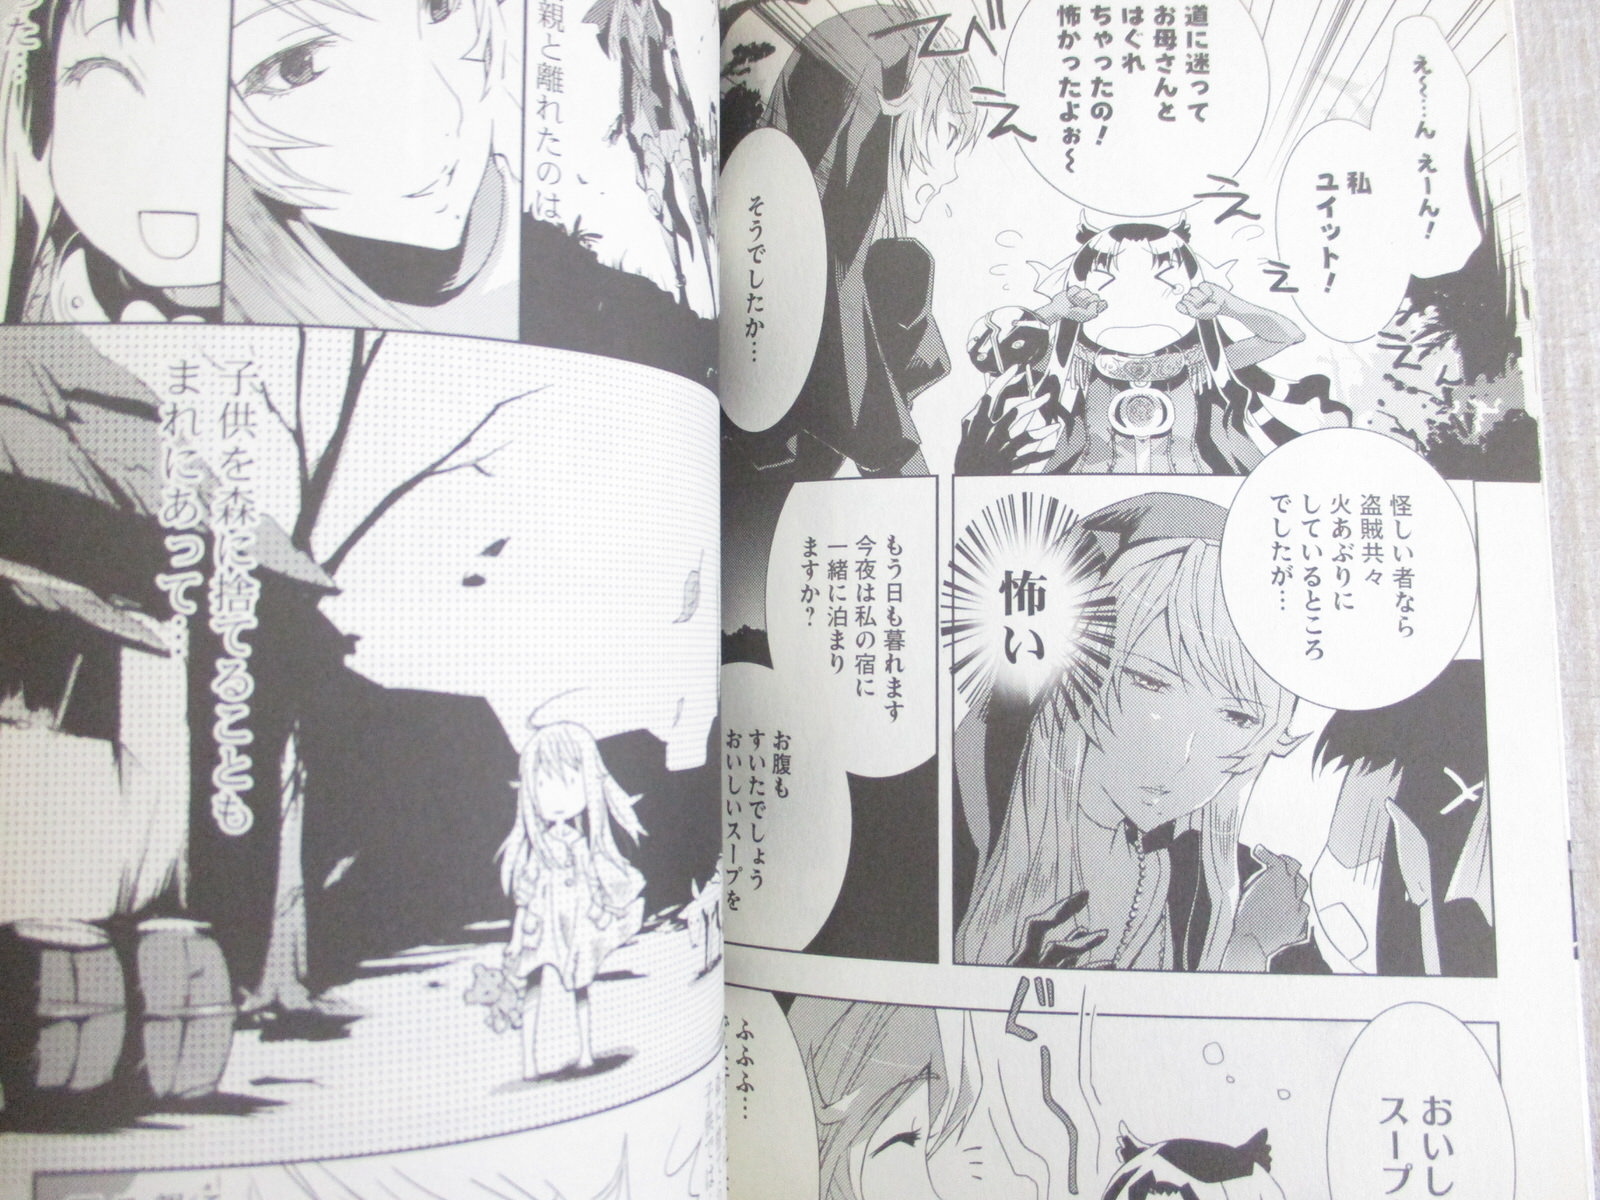 Queen S Blade Rebellion Cero Manga Comic Conjunto Completo 1 3 Riri Sagara Libro Hj Ebay